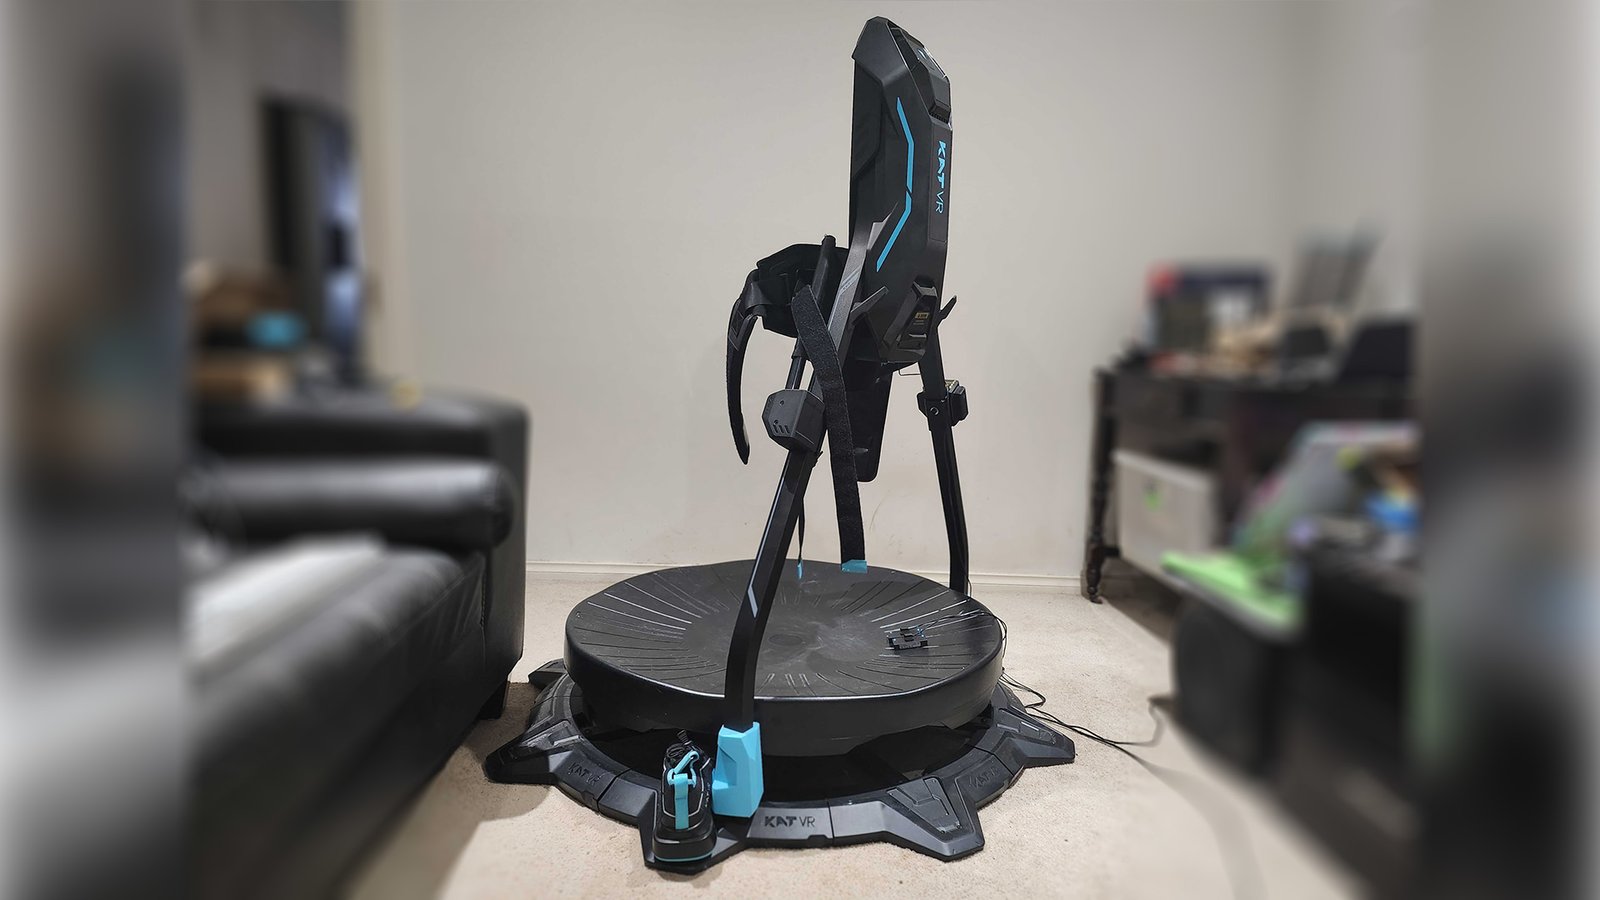 Kat VR treadmill set up in room.